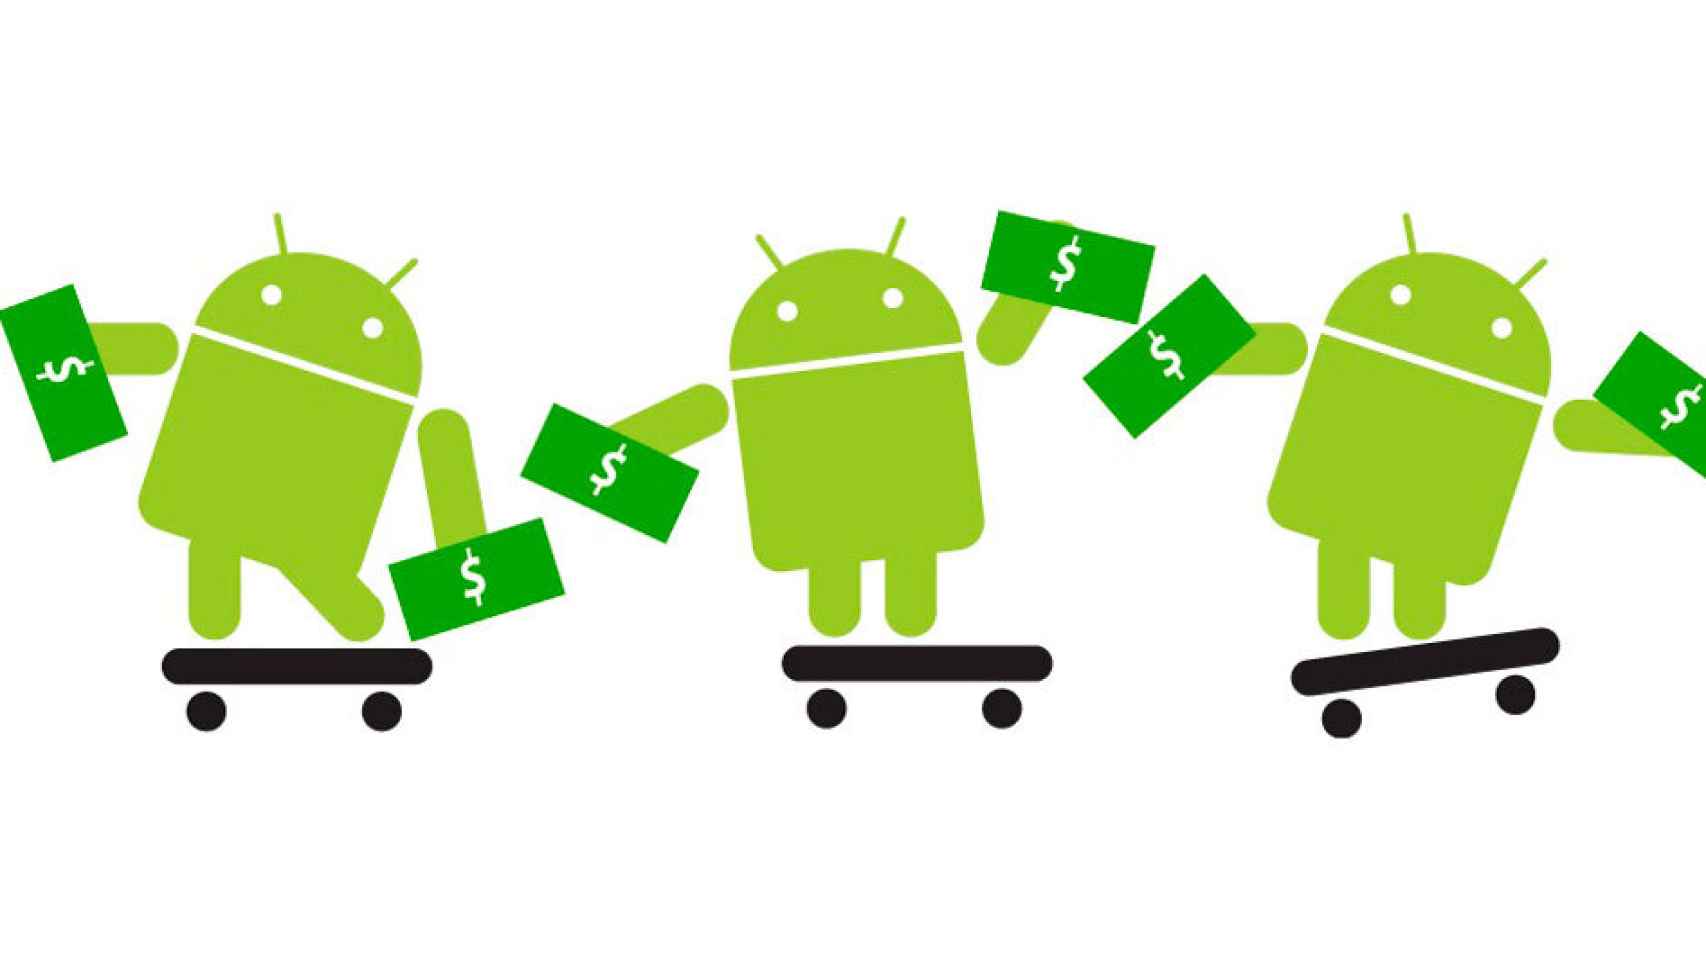 Huawei P10 Plus, Galaxy S8, Google Pixel 2: todos más caros que sus antecesores